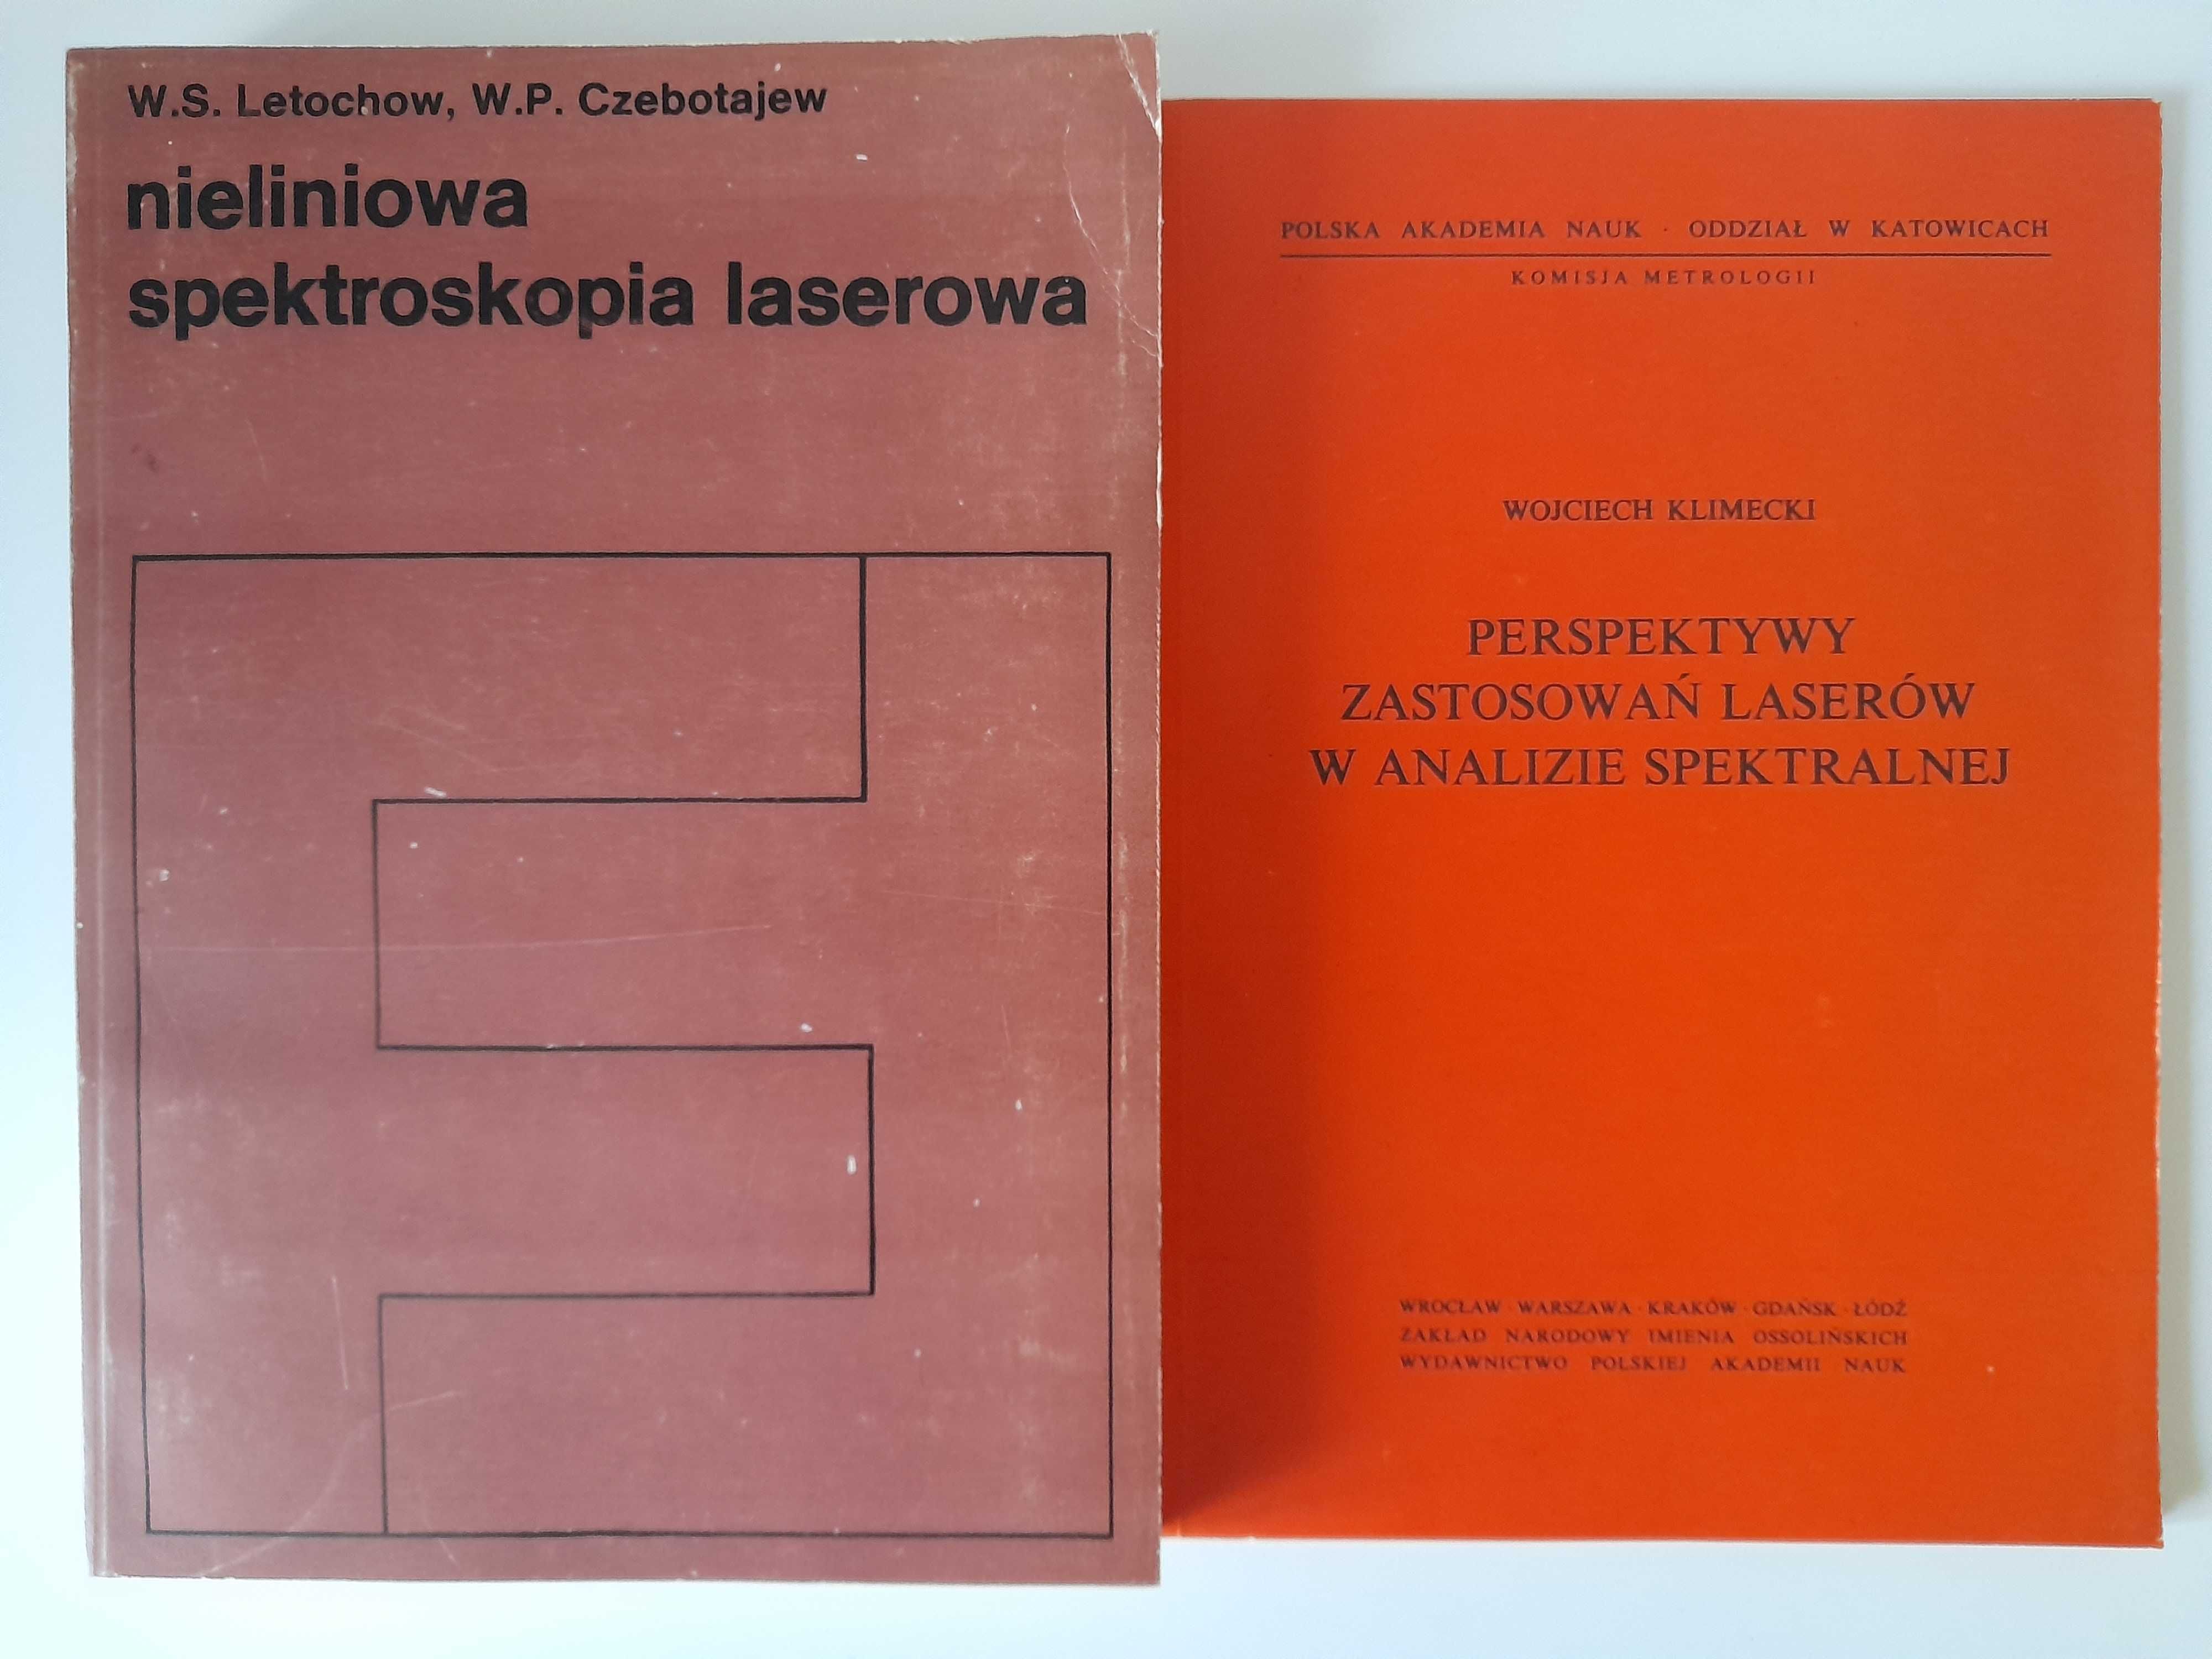 Nieliniowa spektroskopia laserowa Lechotow, Czebotajew + książka